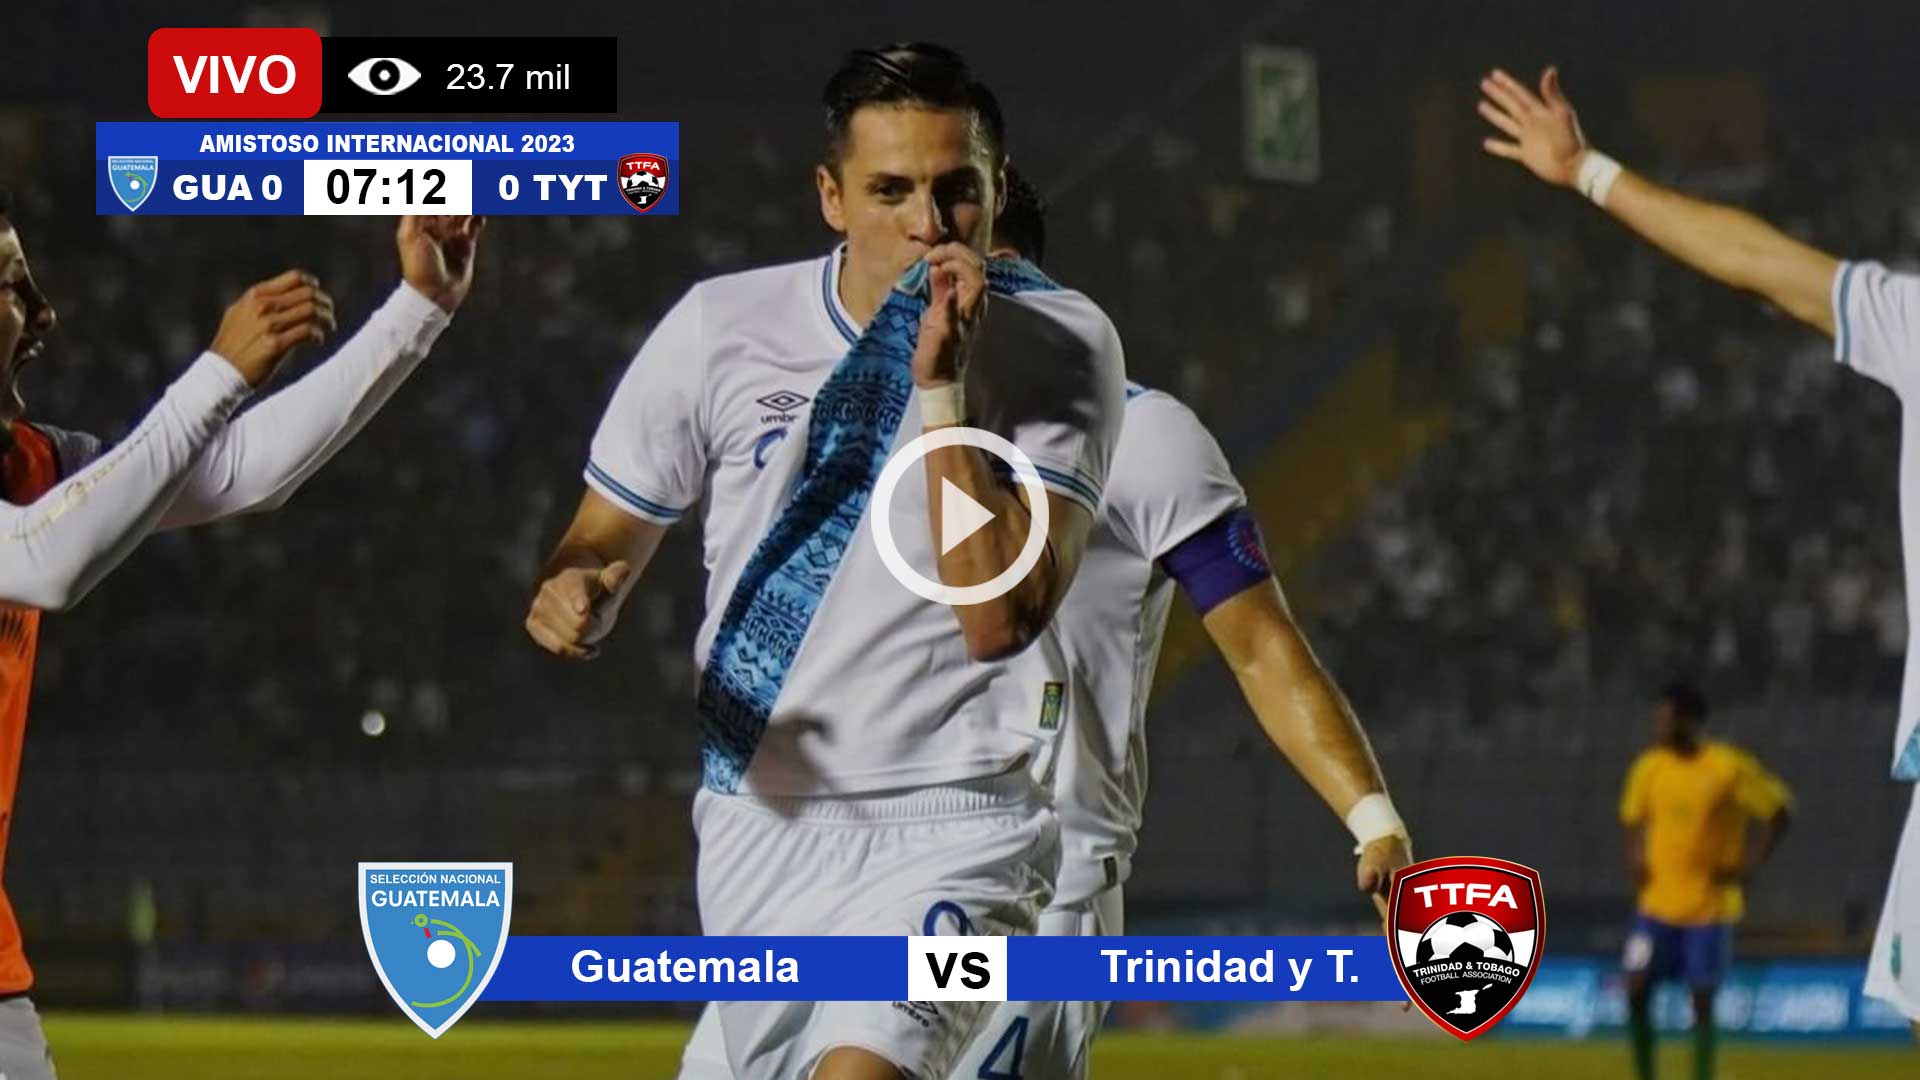 Guatemal-vs-Trinidad-y-Tobago-en-vivo-online-gratis-por-internet